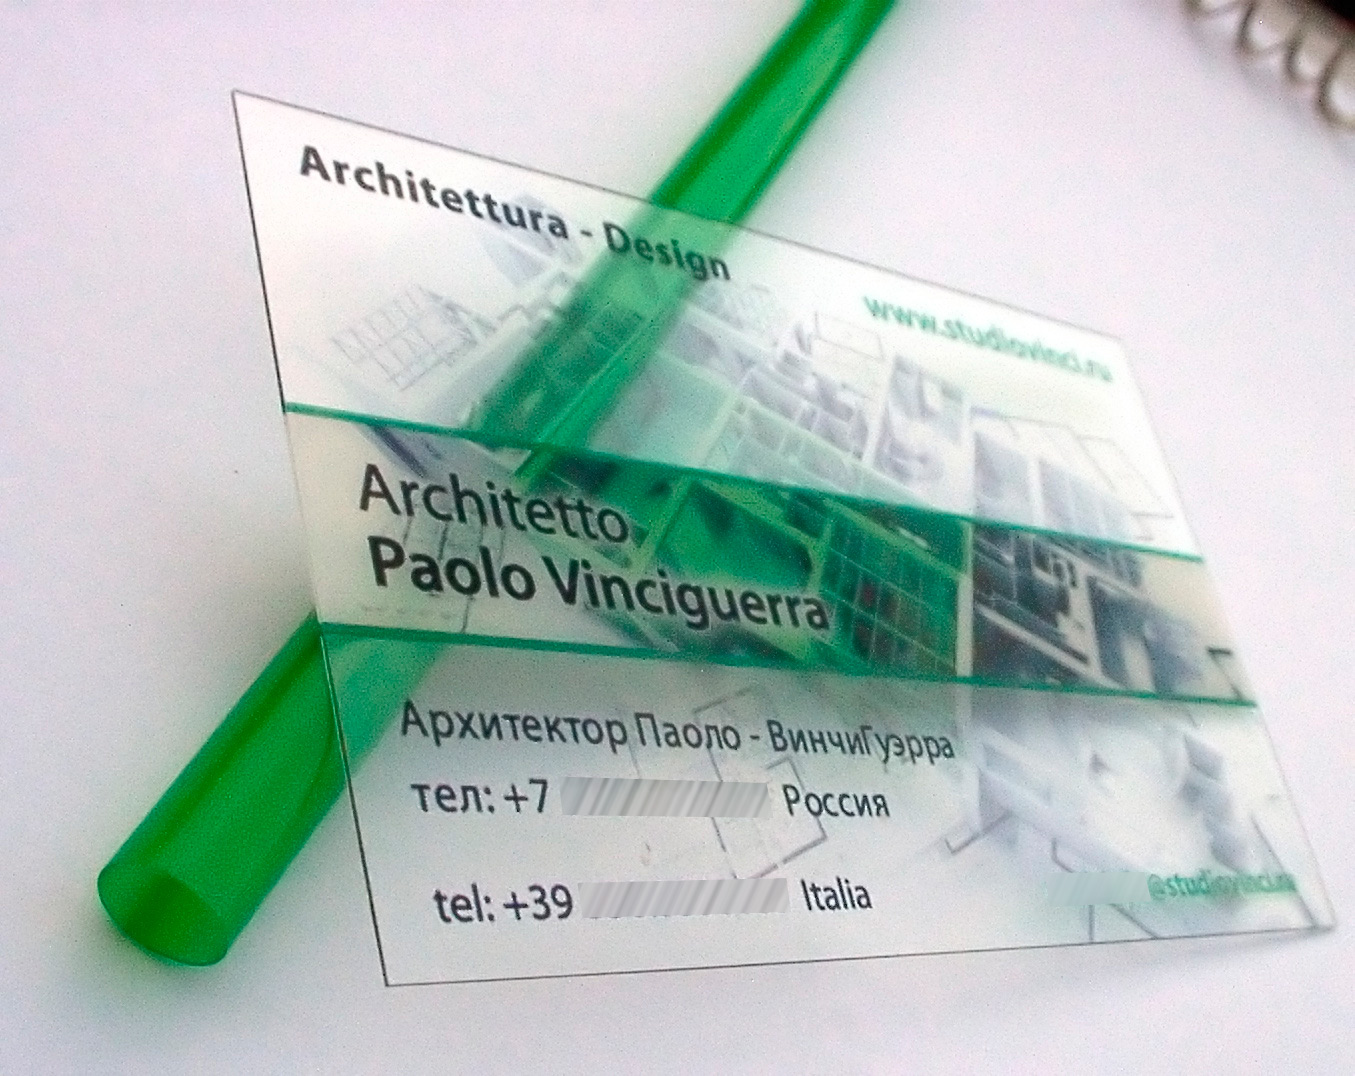 визитка для архитектора Паоло ВинчиГуэрра